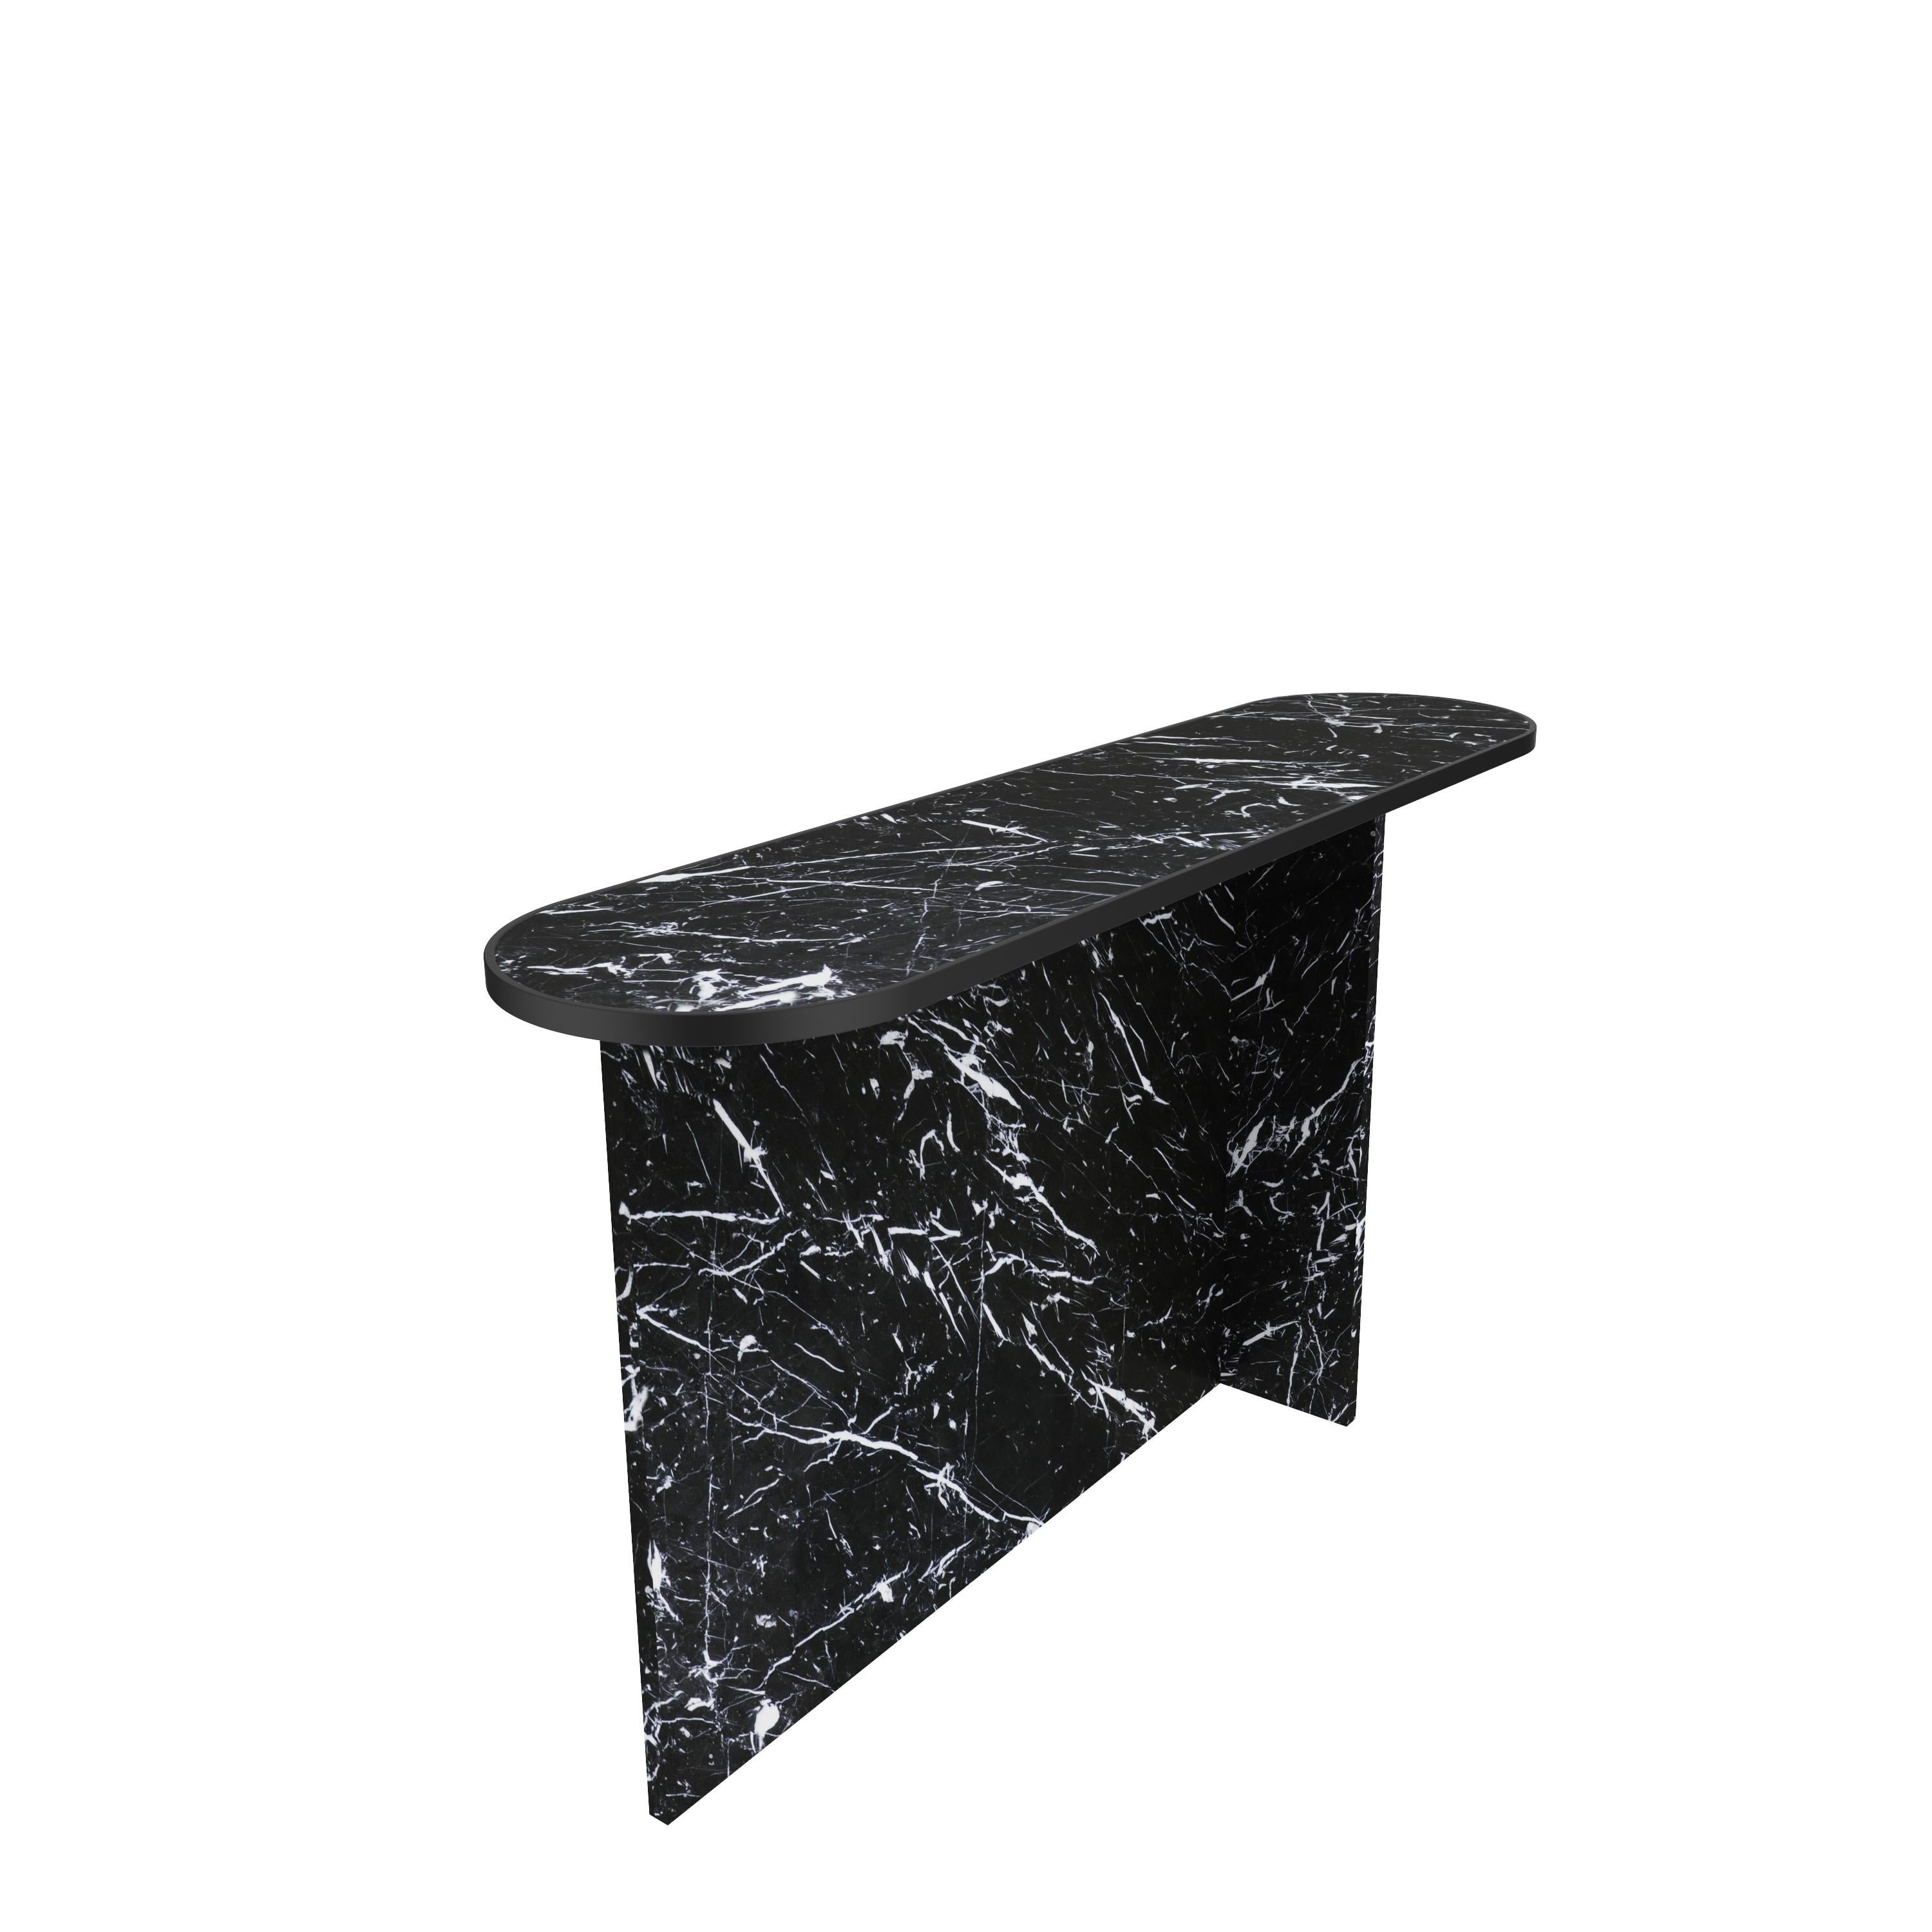 Scandinavian Modern NORDST T-Small Side Table, Italian Green Lightning Marble, Danish Modern Design For Sale